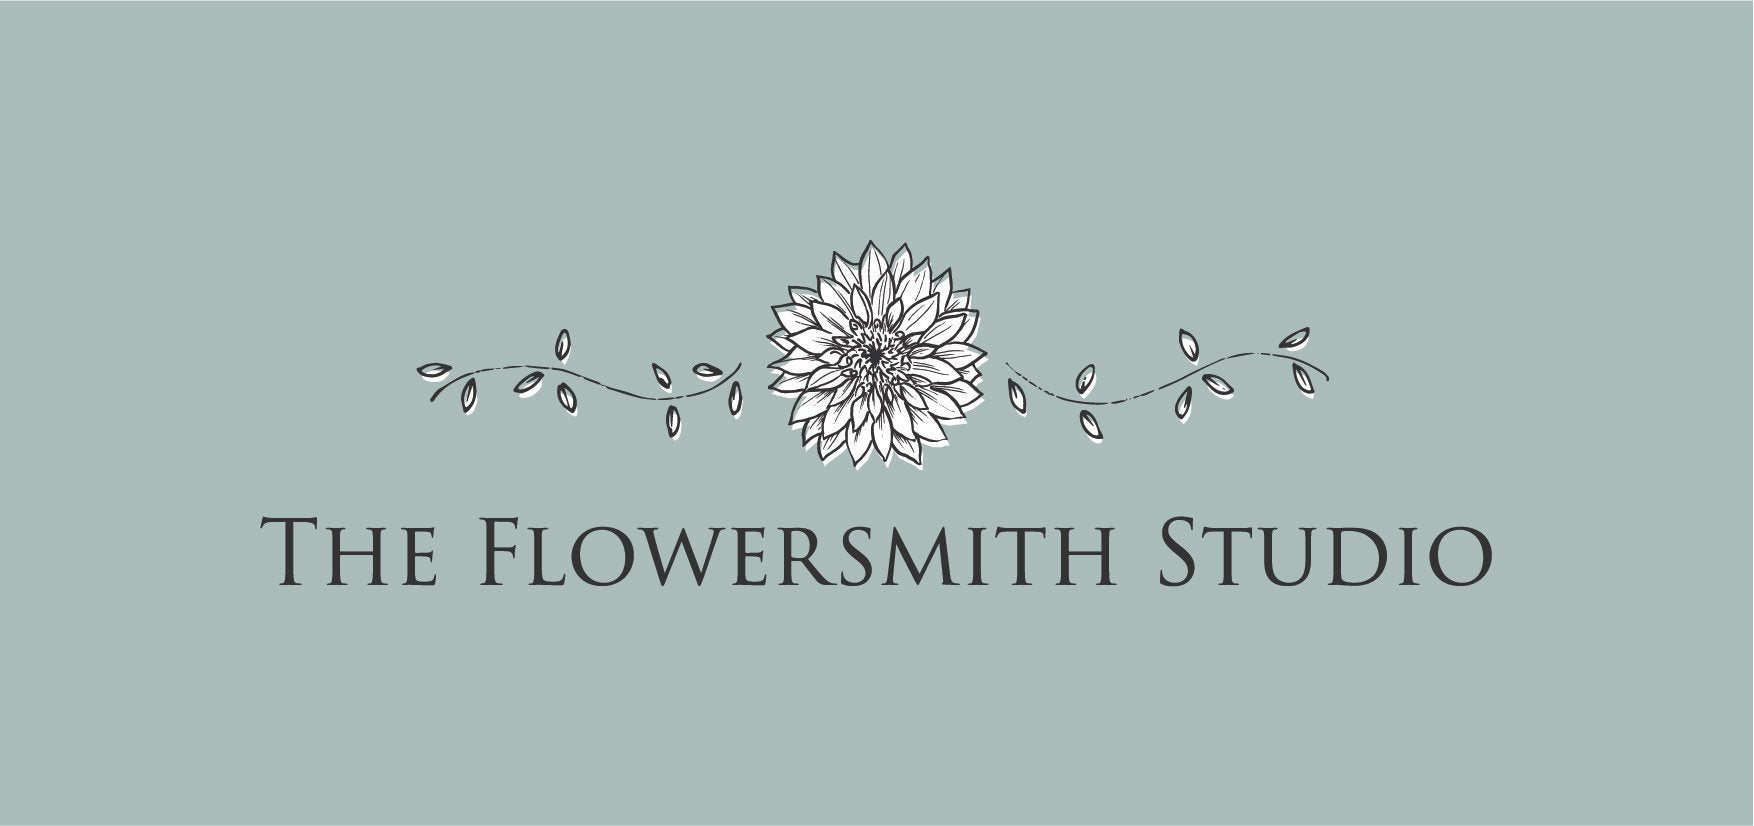 The Flowersmith Studio